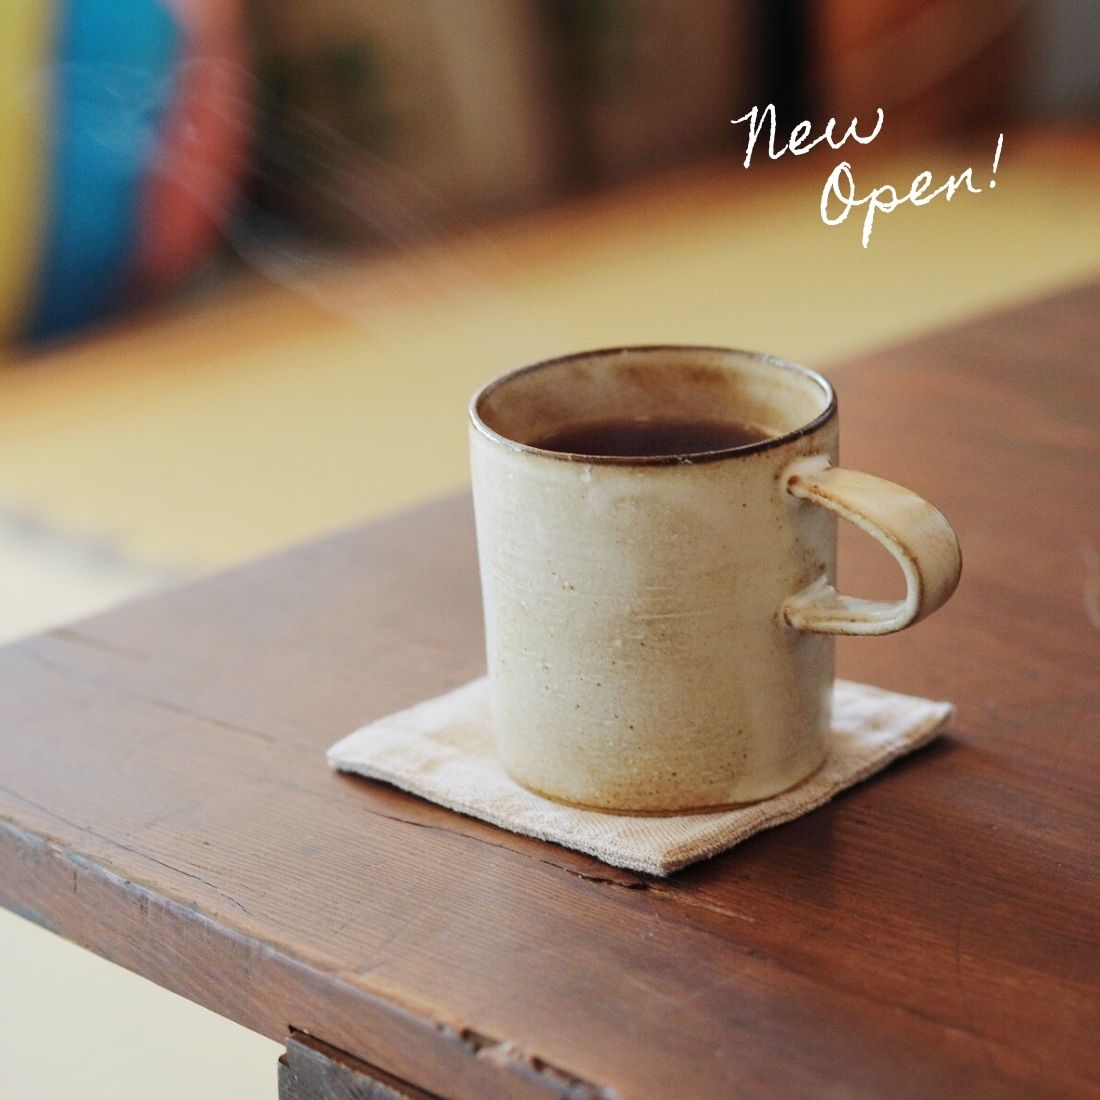 愛知 春日井に コーヒーポライト Coffee Polite がオープン コーヒーの相談もできる ポライト定期便 も 日刊ケリー